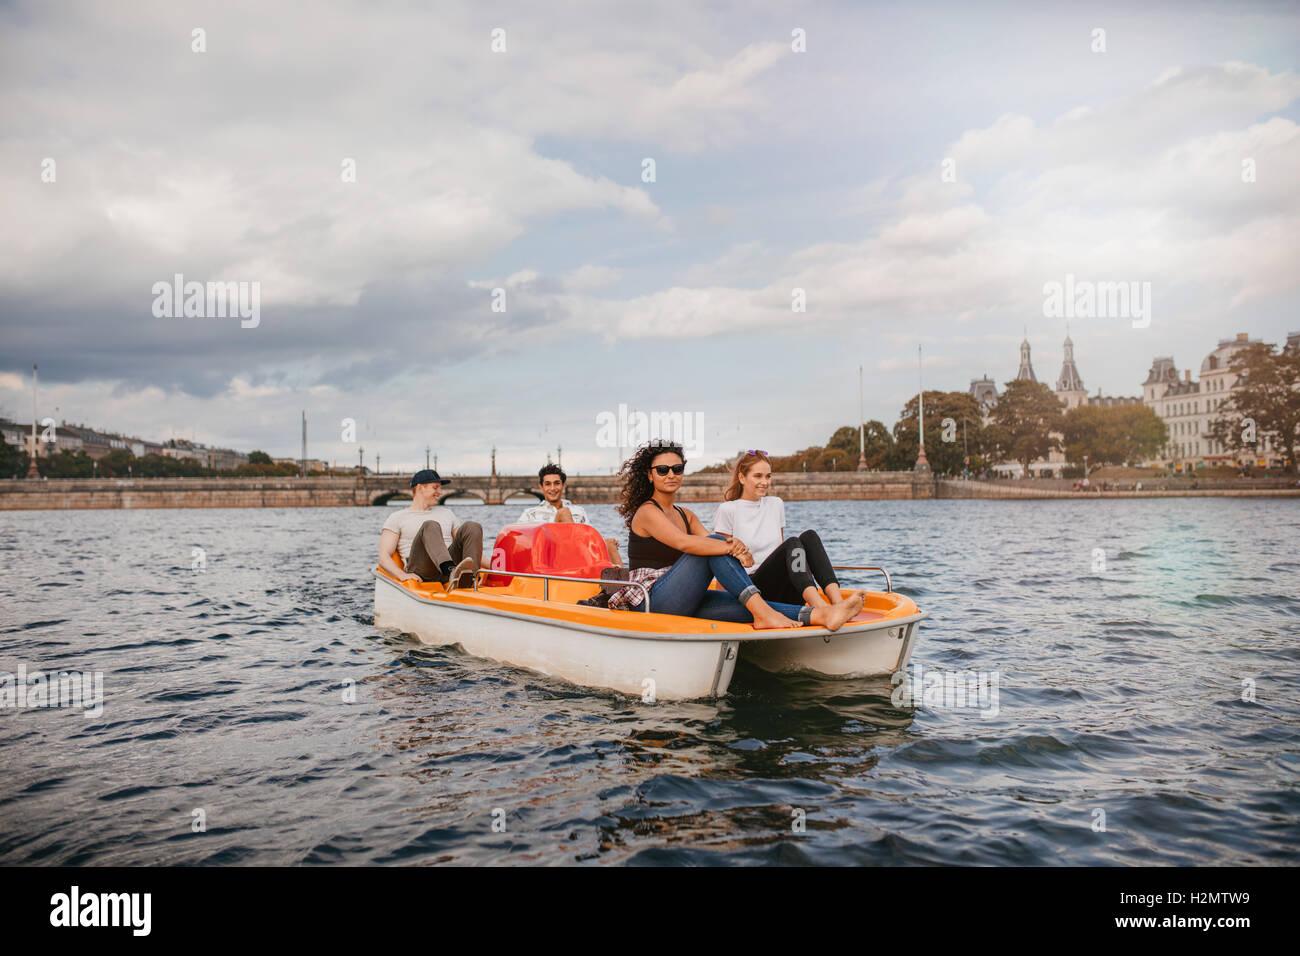 Schuss von vier jungen Menschen auf Tretboot in See. Frauen sitzen auf Vorderseite mit Männern am Rücken das Boot in die Pedale. Stockfoto